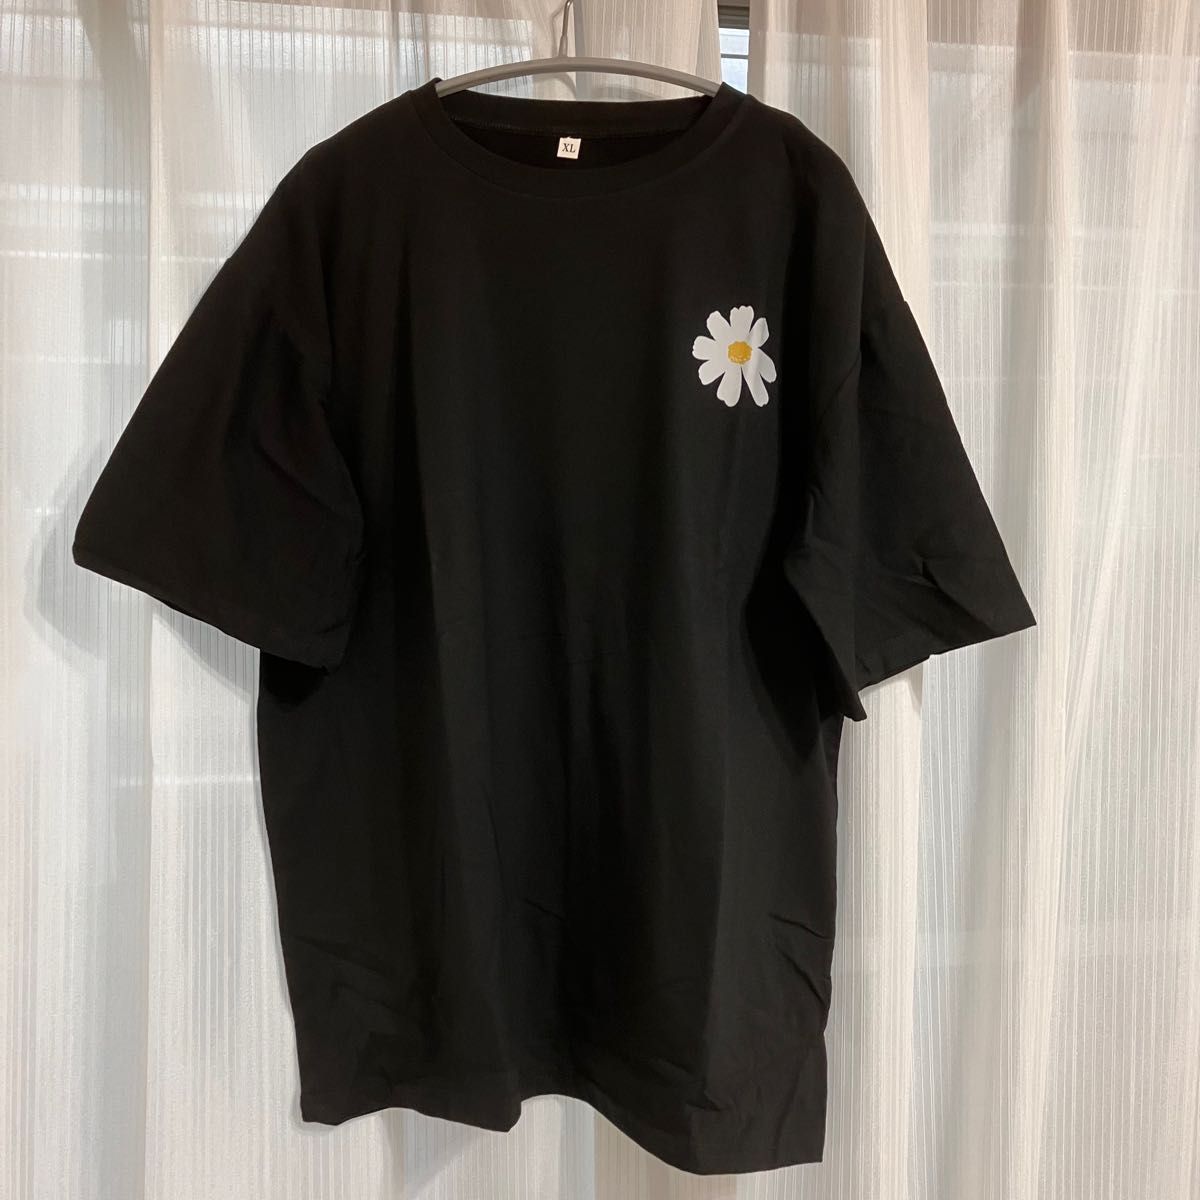 Tシャツ 人気 オーバーサイズ 黒 デイジー柄 韓国 海外 花柄 半袖